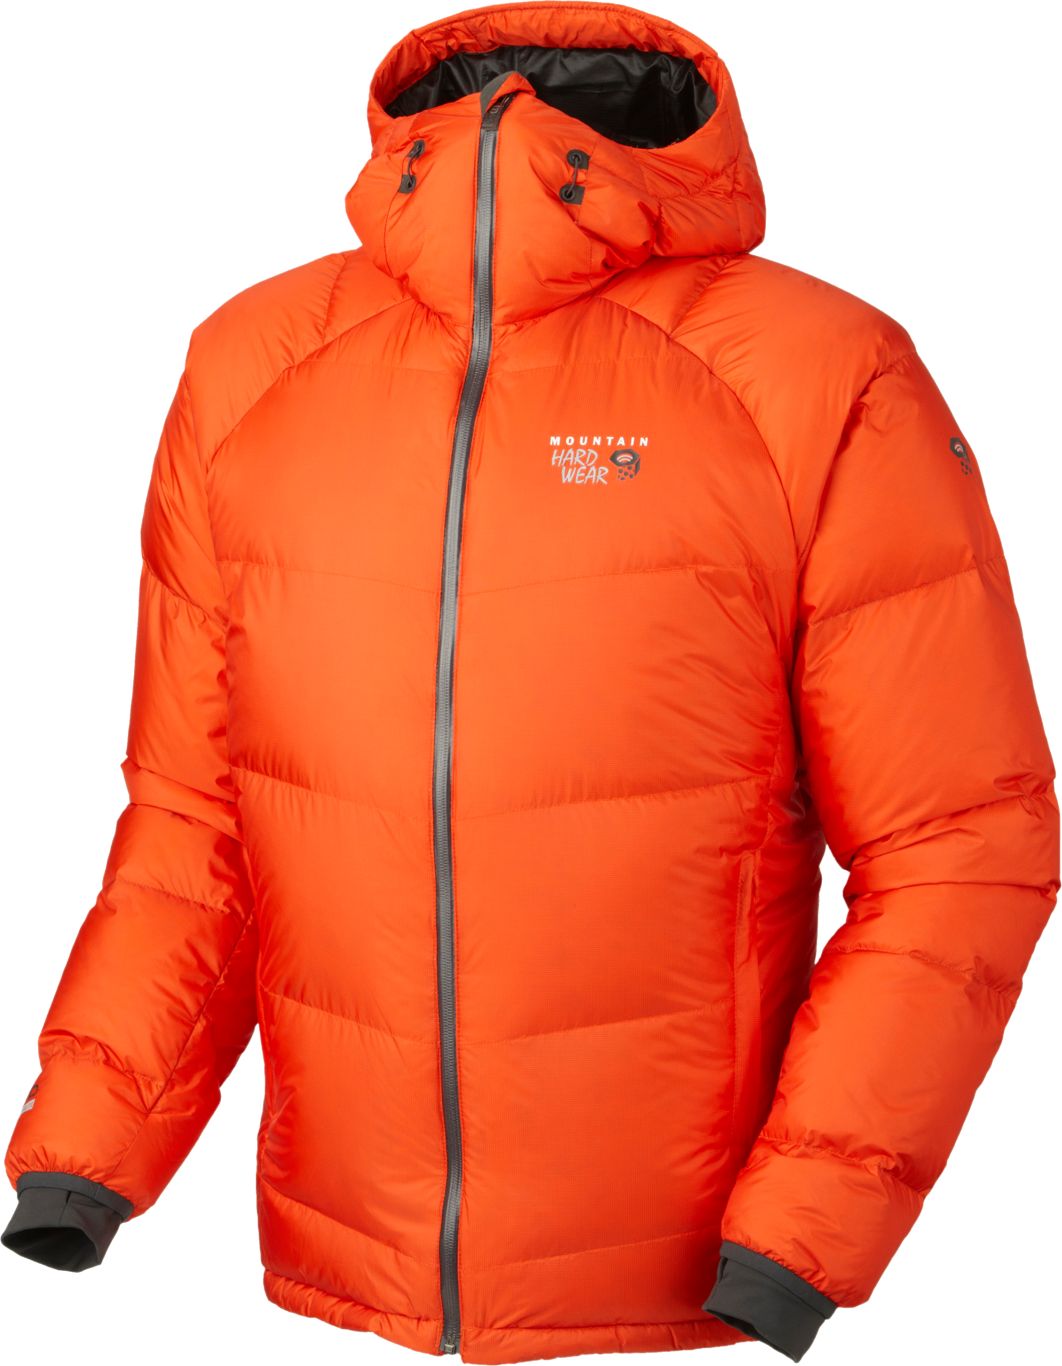 Orange jacket PNG image    图片编号:8050